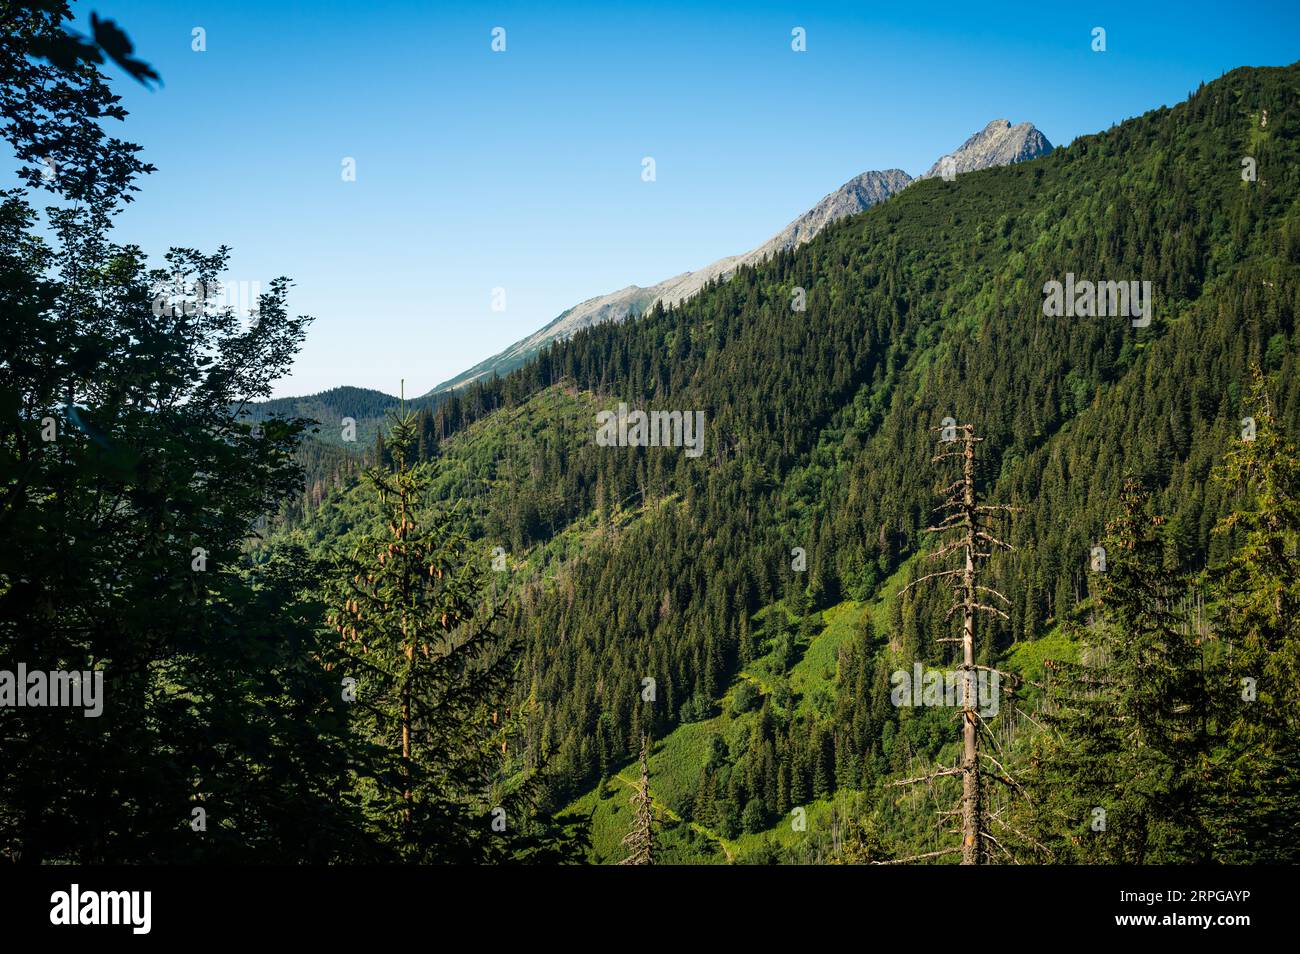 Unter der hoch aufragenden Hohen Tatra entfaltet sich ein ruhiger blick auf üppiges Grün, das die weitläufigen Kiefernwälder in ihrer natürlichen Pracht zeigt Stockfoto